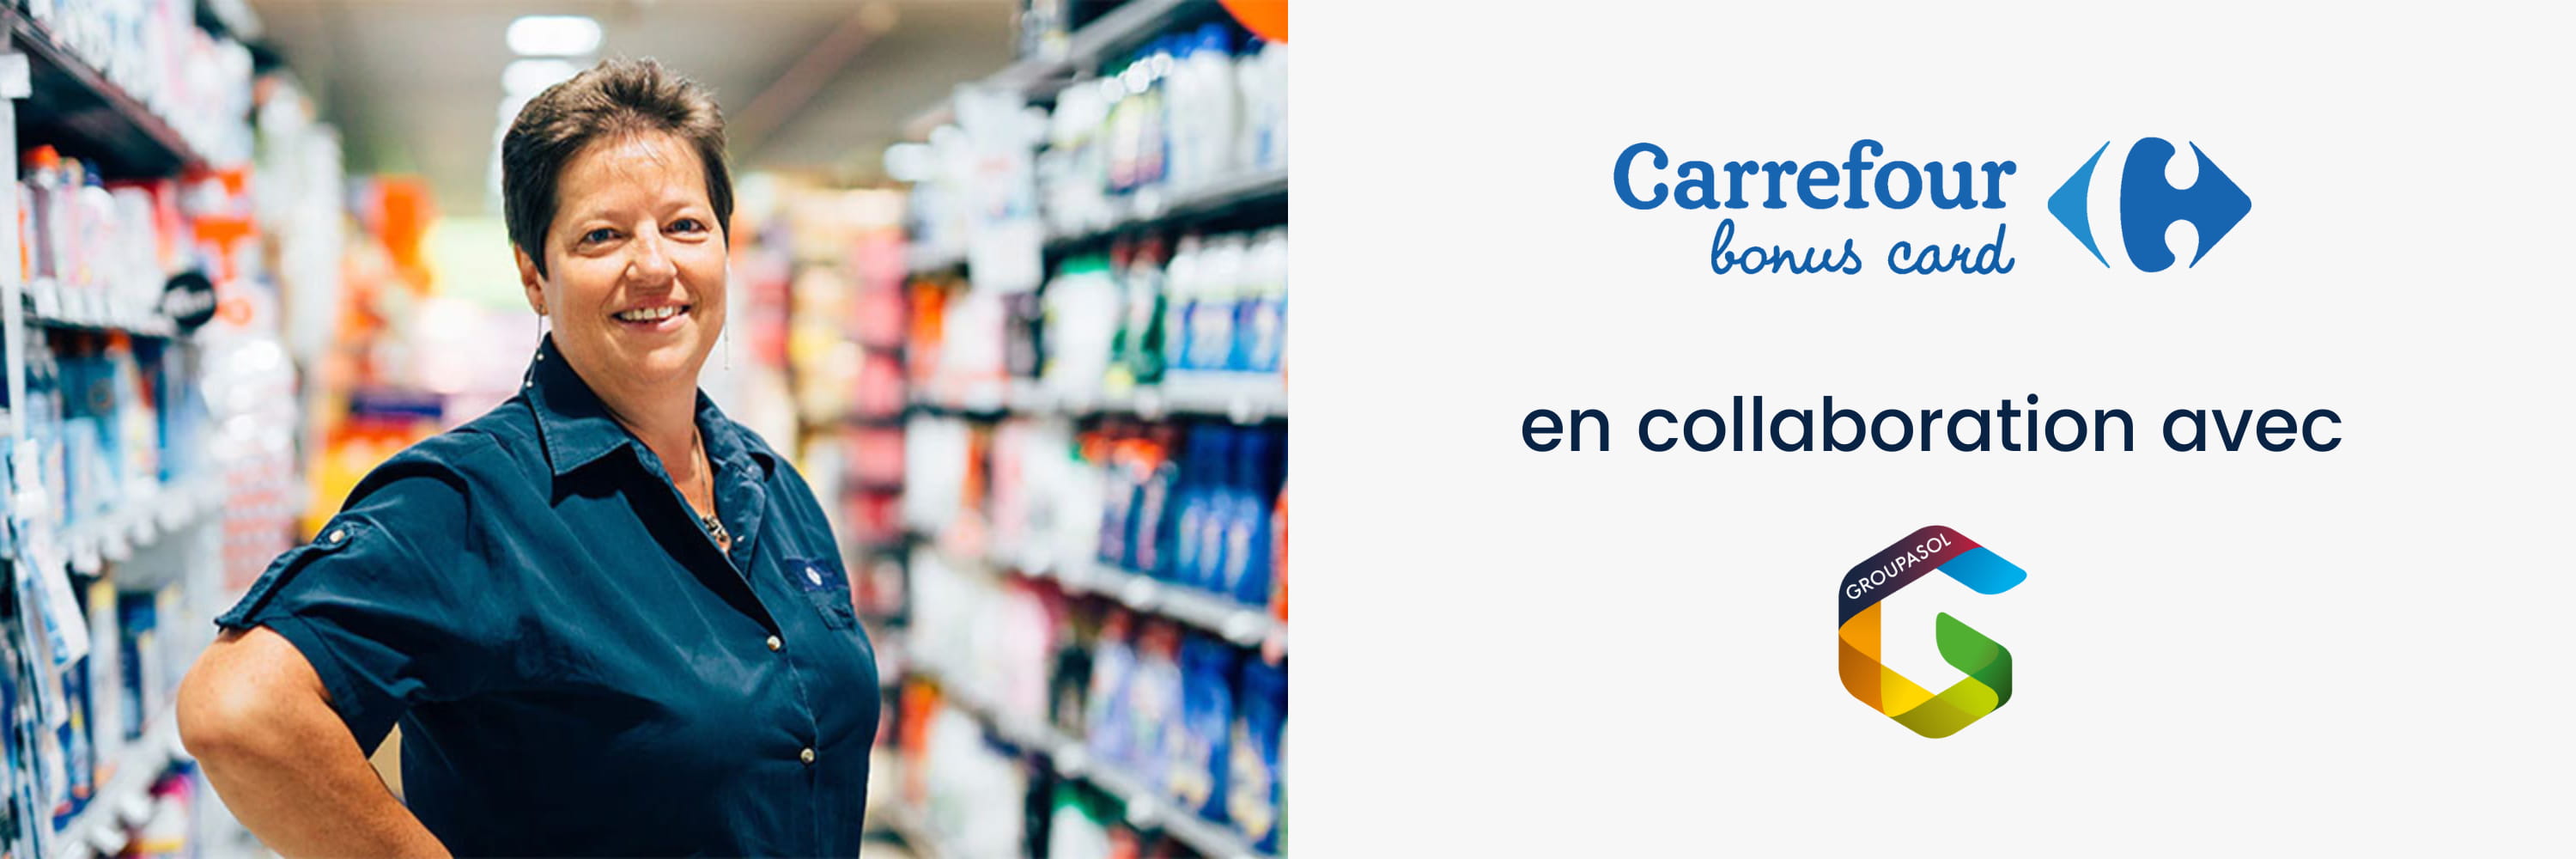 Carrefour en collaboration avec Groupasol